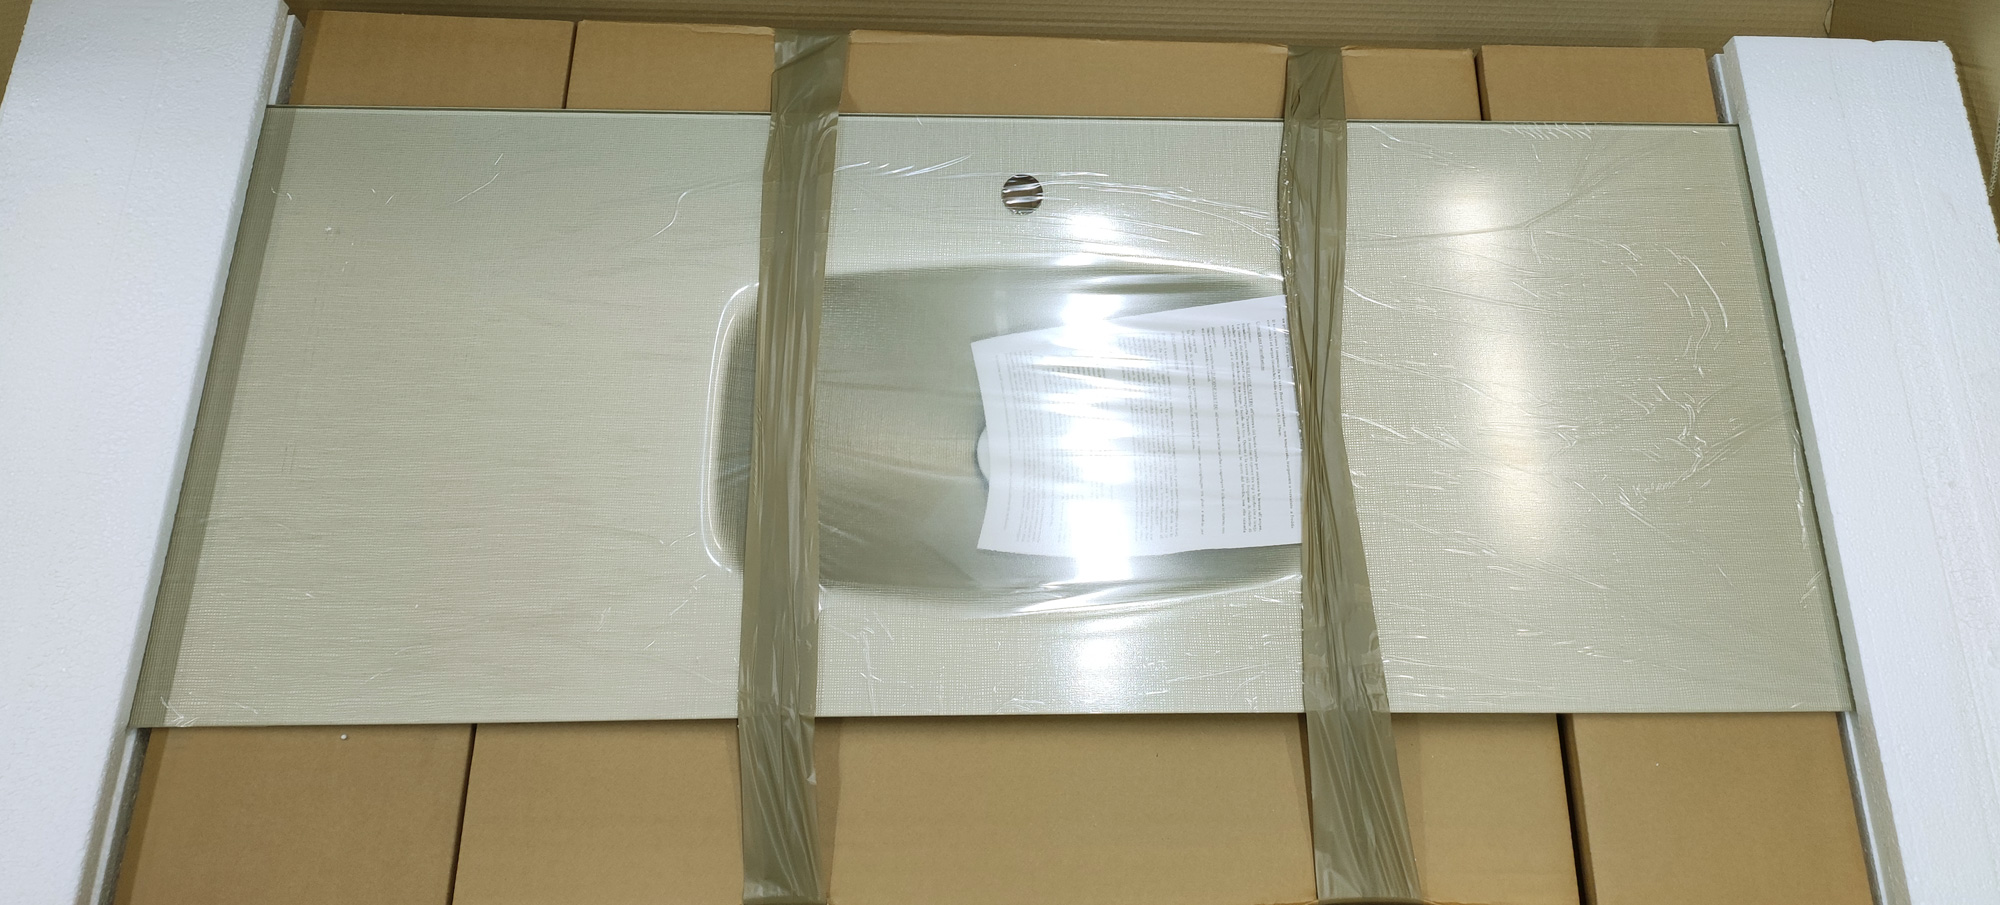 Модуль-раковина, стекло 10 мм, LM08 (сетка), серый беж. 1504*503*10